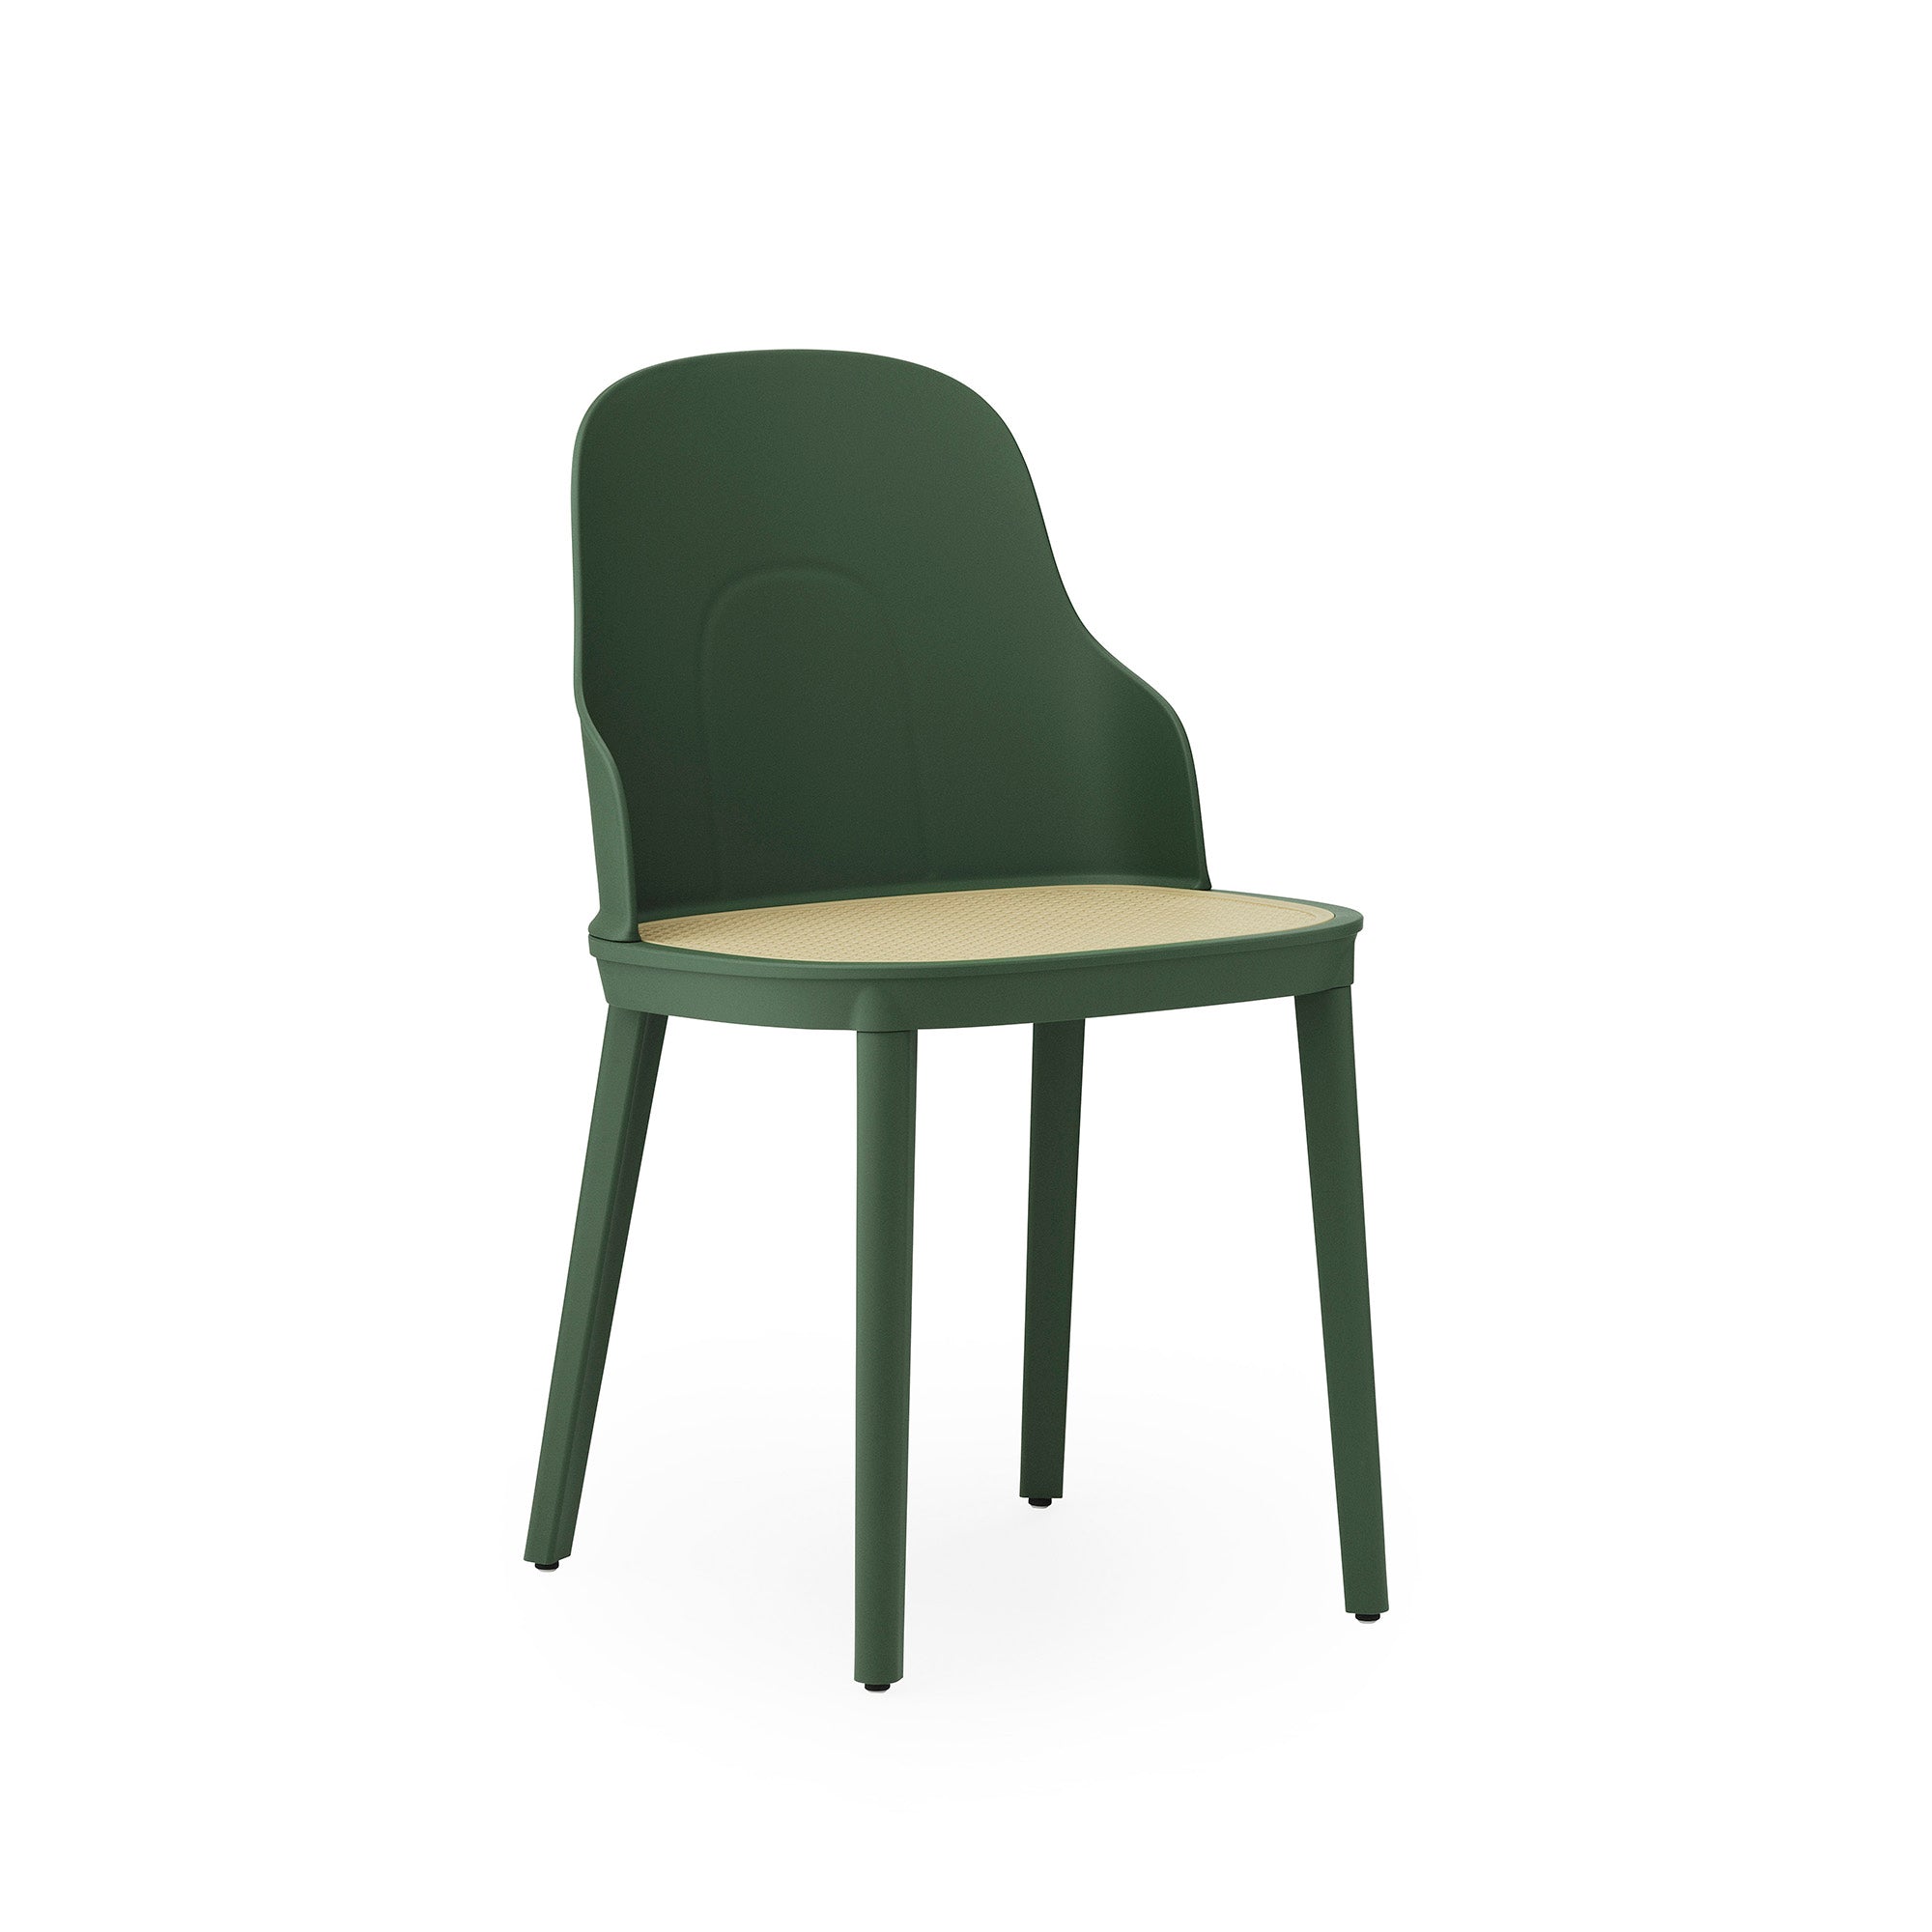 Allez Chair, scaun din plastic cu șezutul din răchită turnată